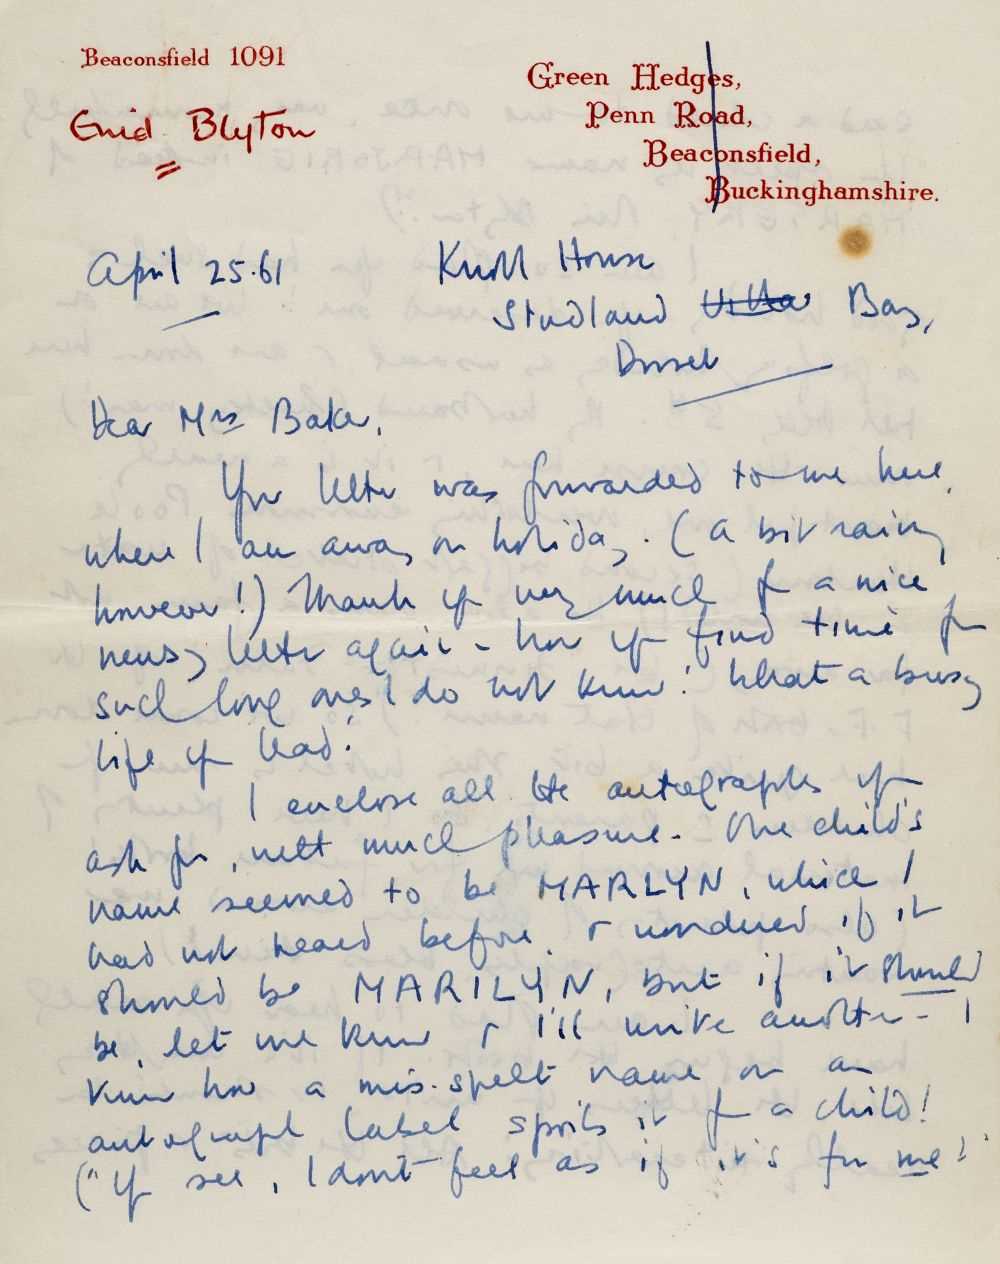 Lot 663 - Blyton (Enid, 1897-1968). Autograph letter signed, 25 April 1961